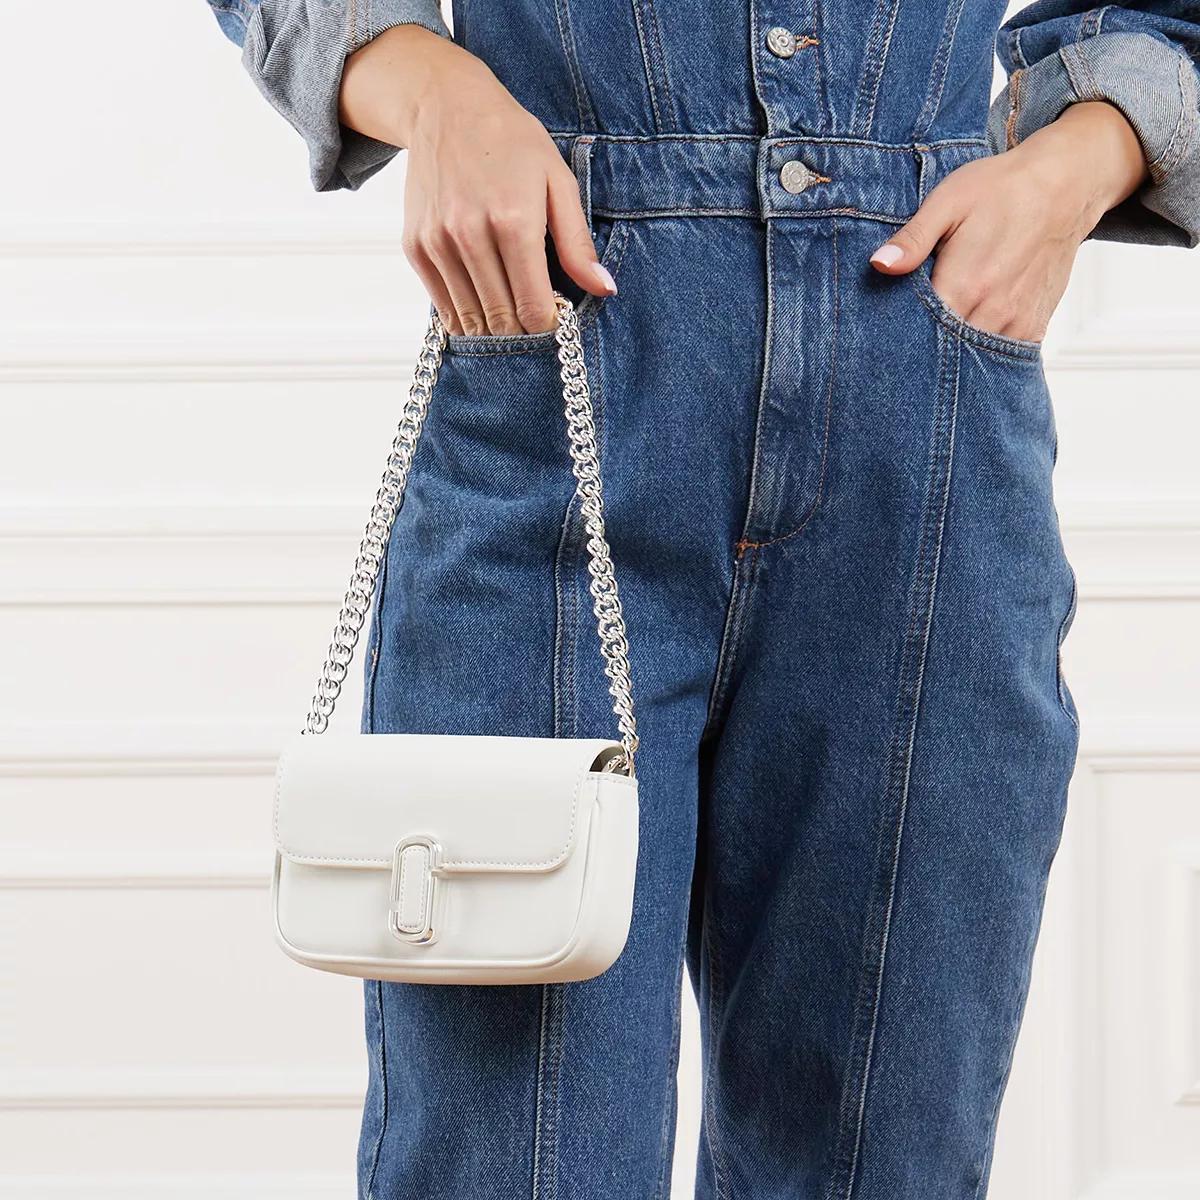 Marc Jacobs Crossbody Bags - The Mini Shoulder Bag - Gr. unisize - in Weiß - für Damen von Marc Jacobs